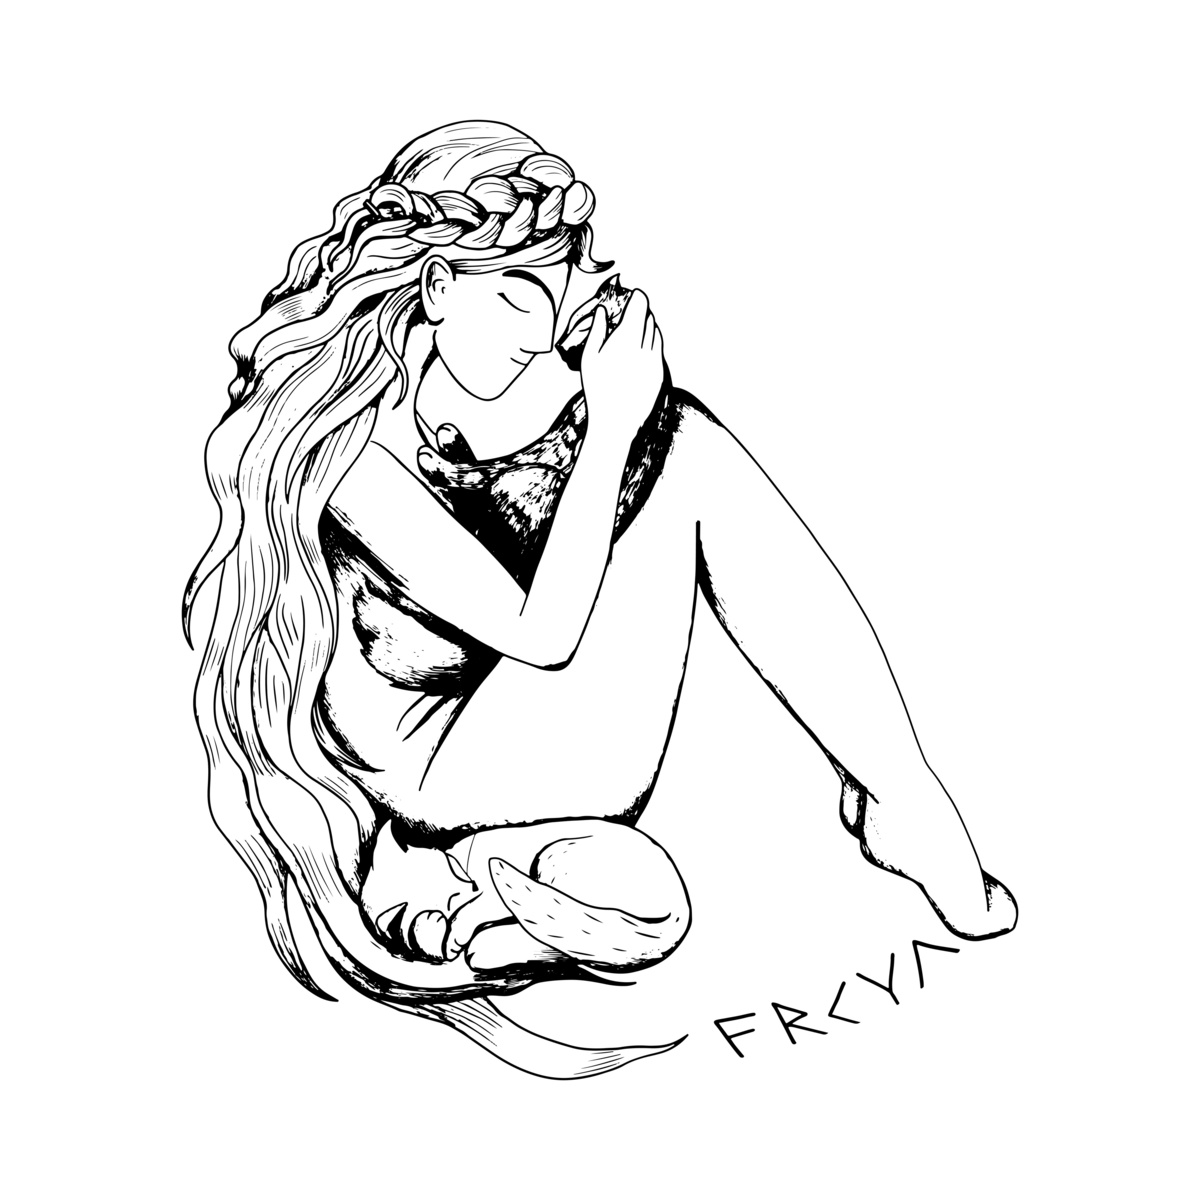 Ilustração em preto e branco da deusa Freya.